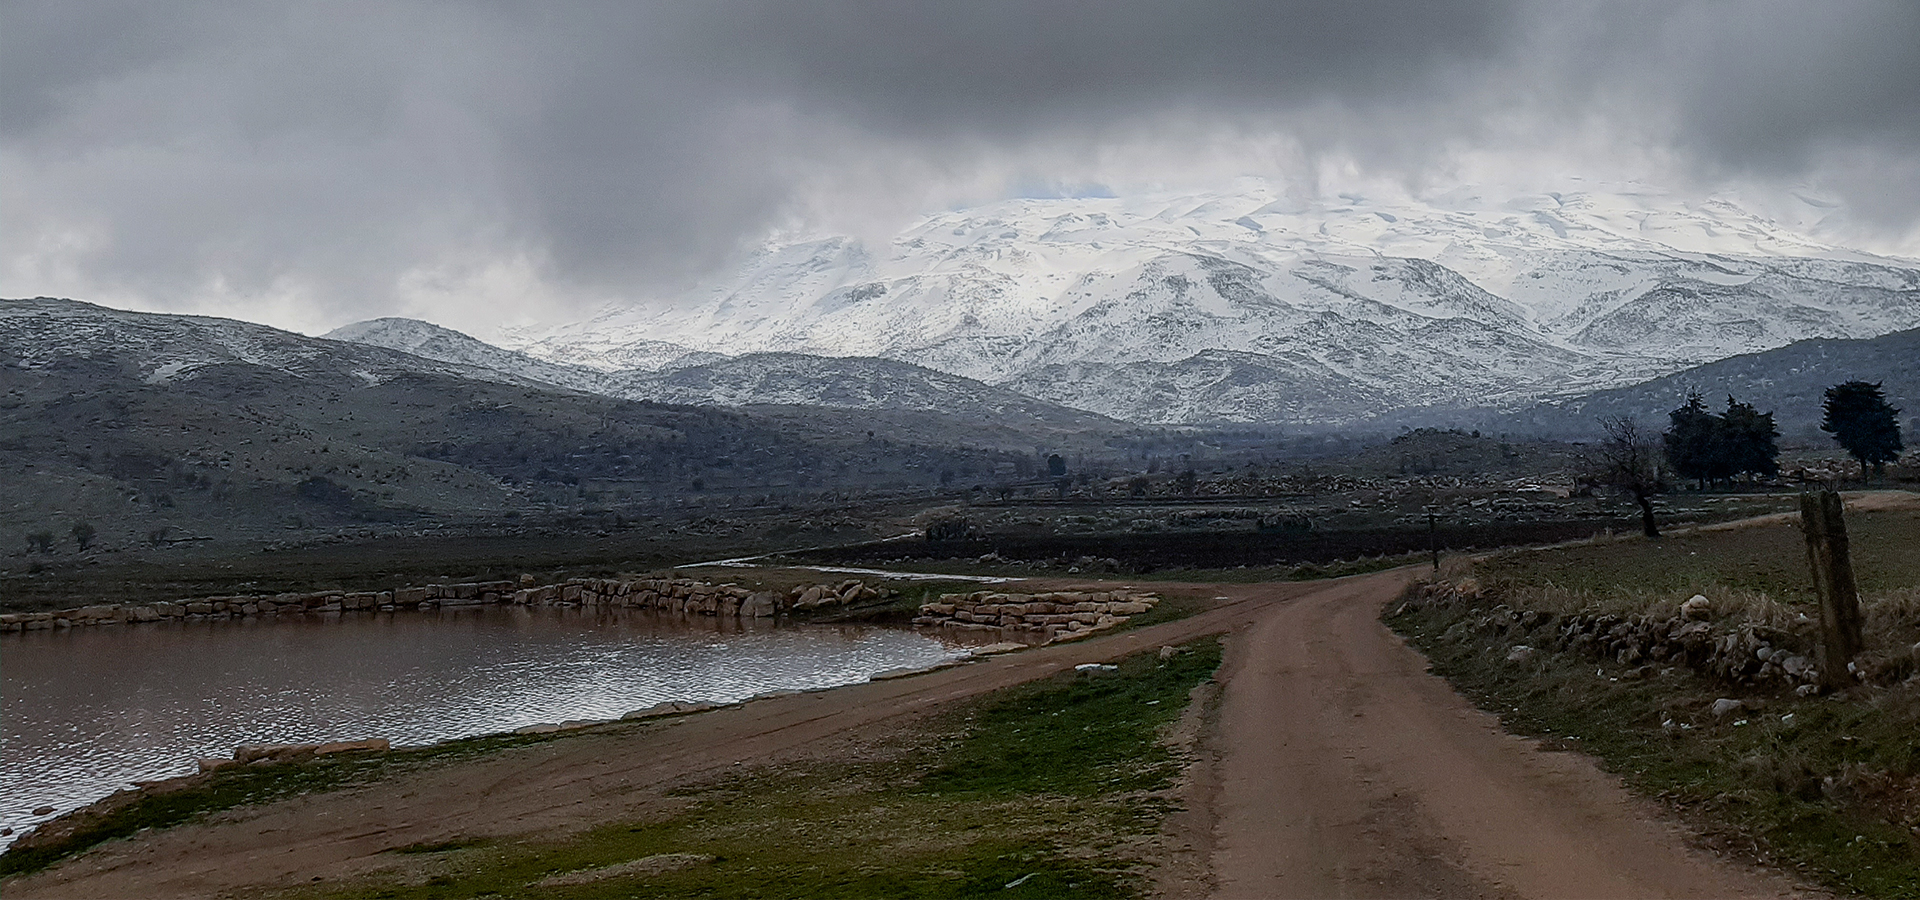 Mount Hermon- image mira sabbagh